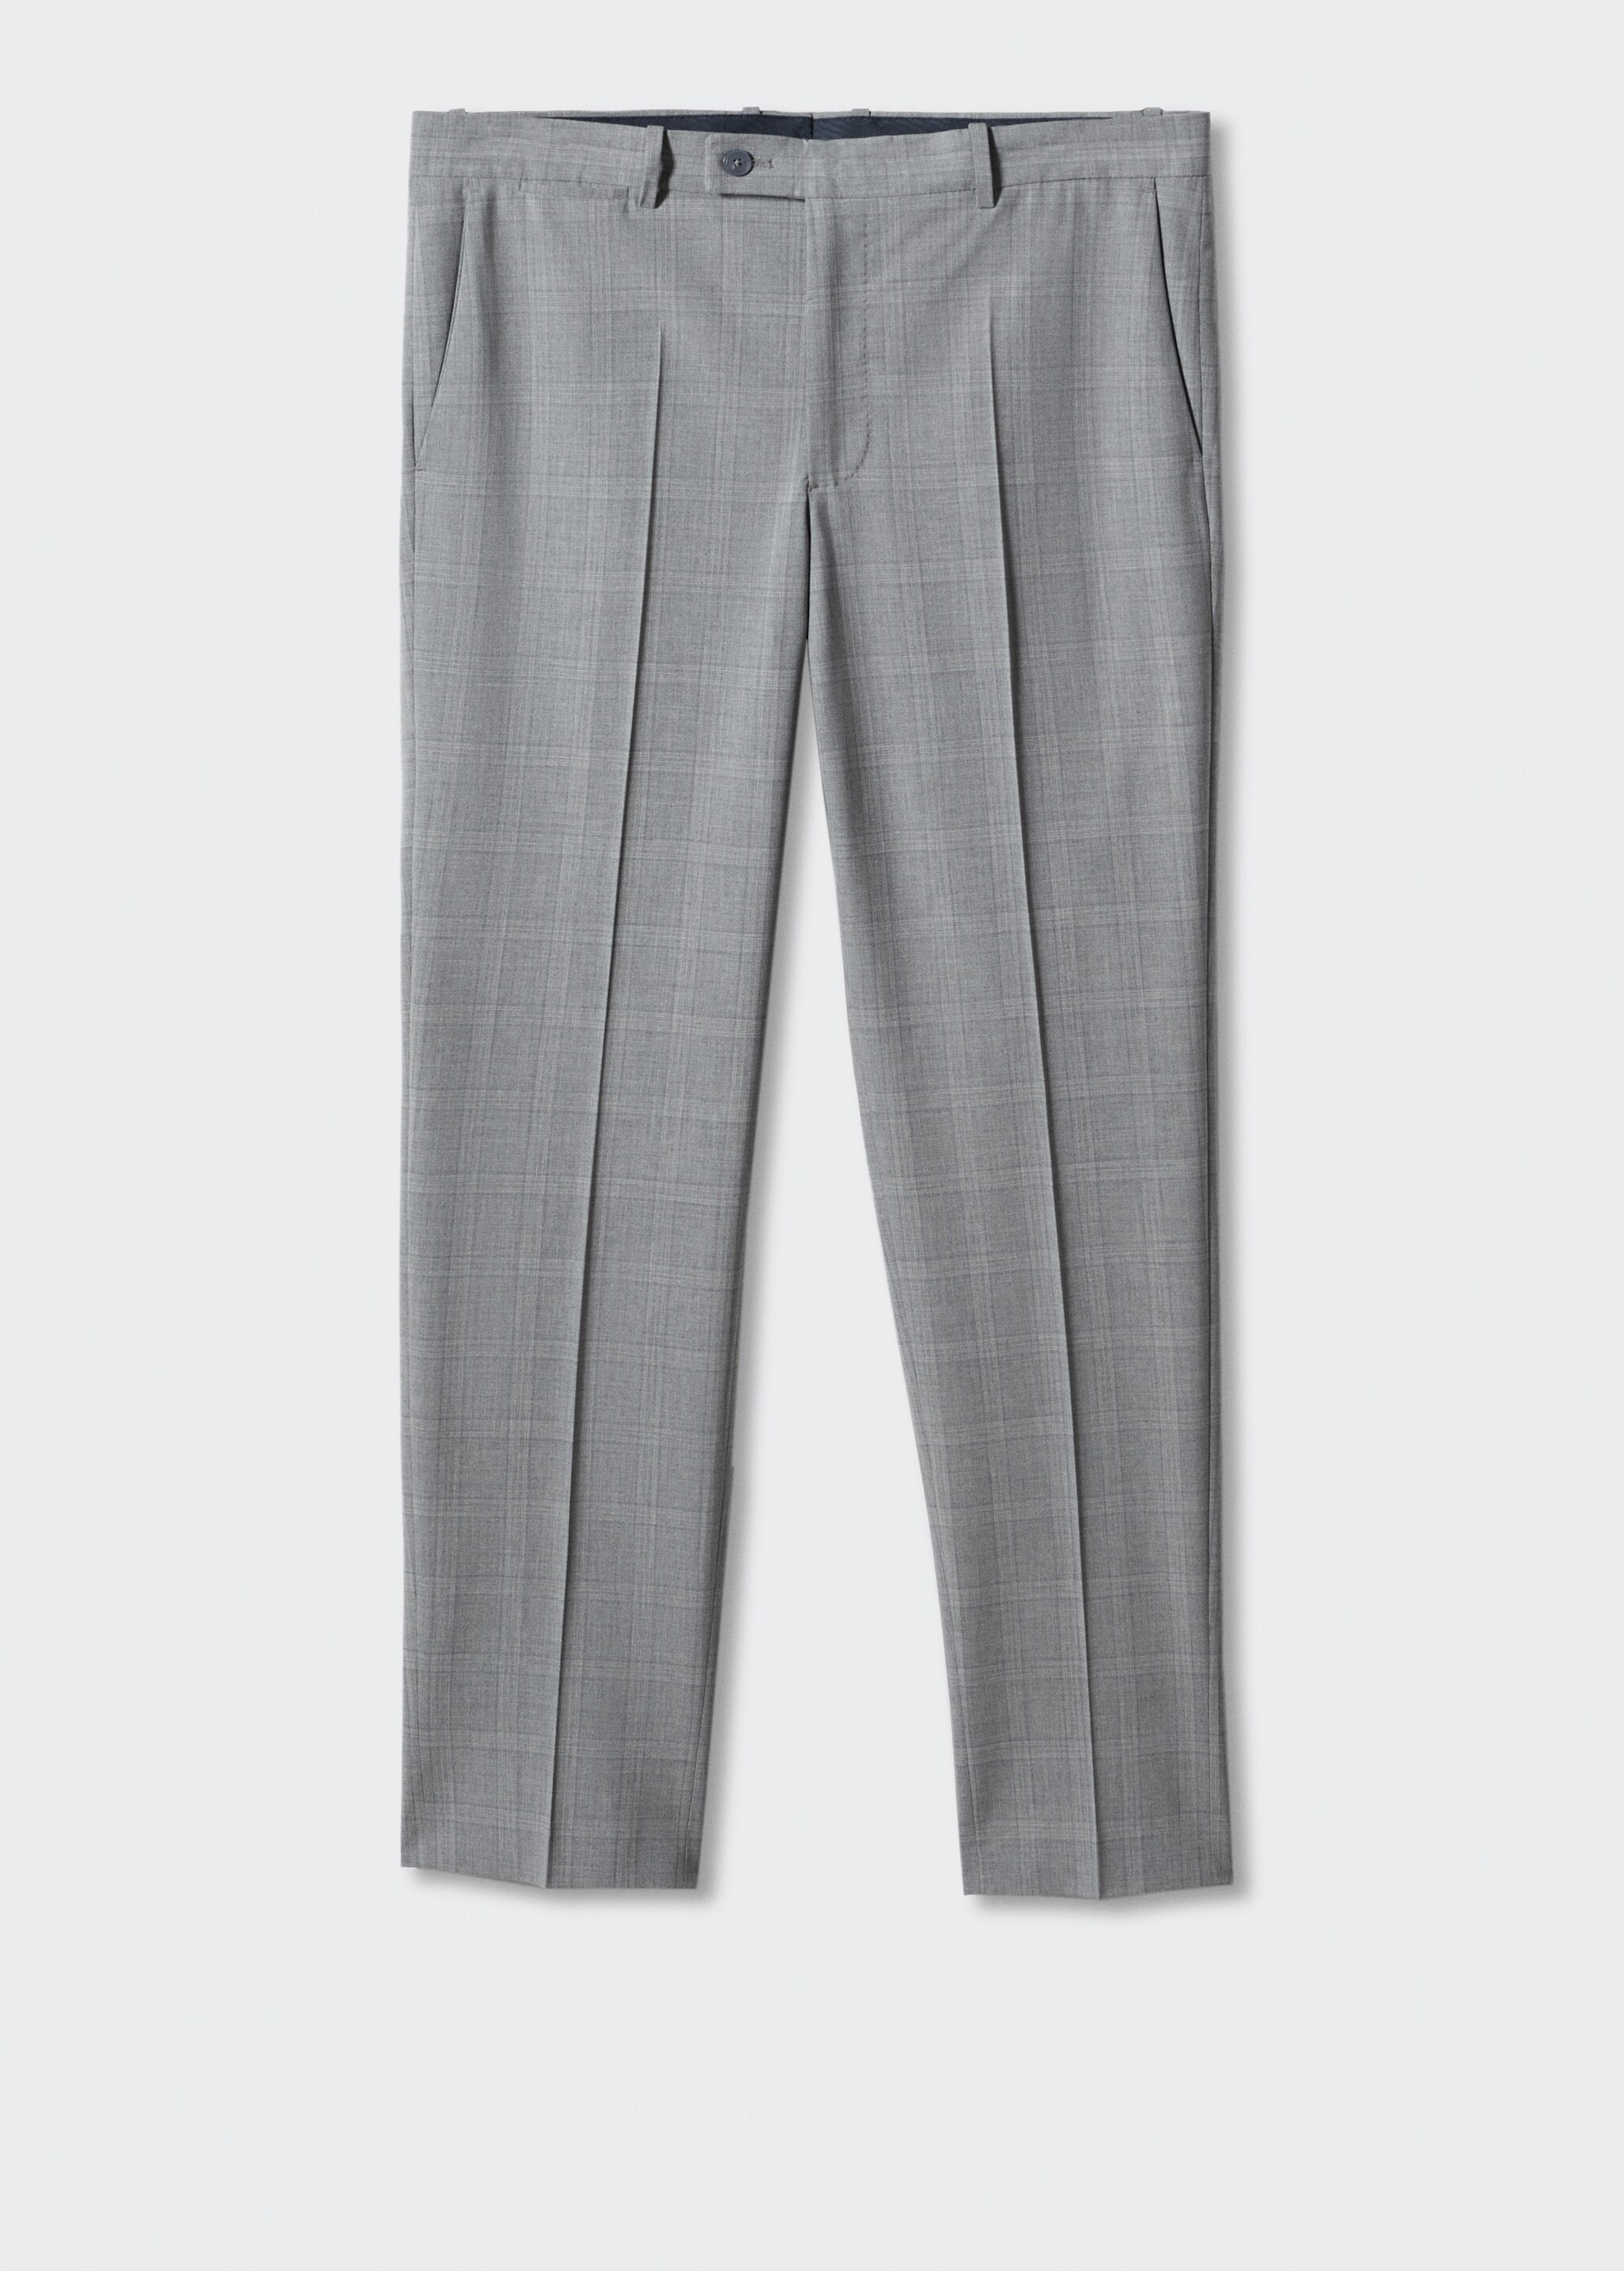 Pantalons vestir slim fit llana - Article sense model